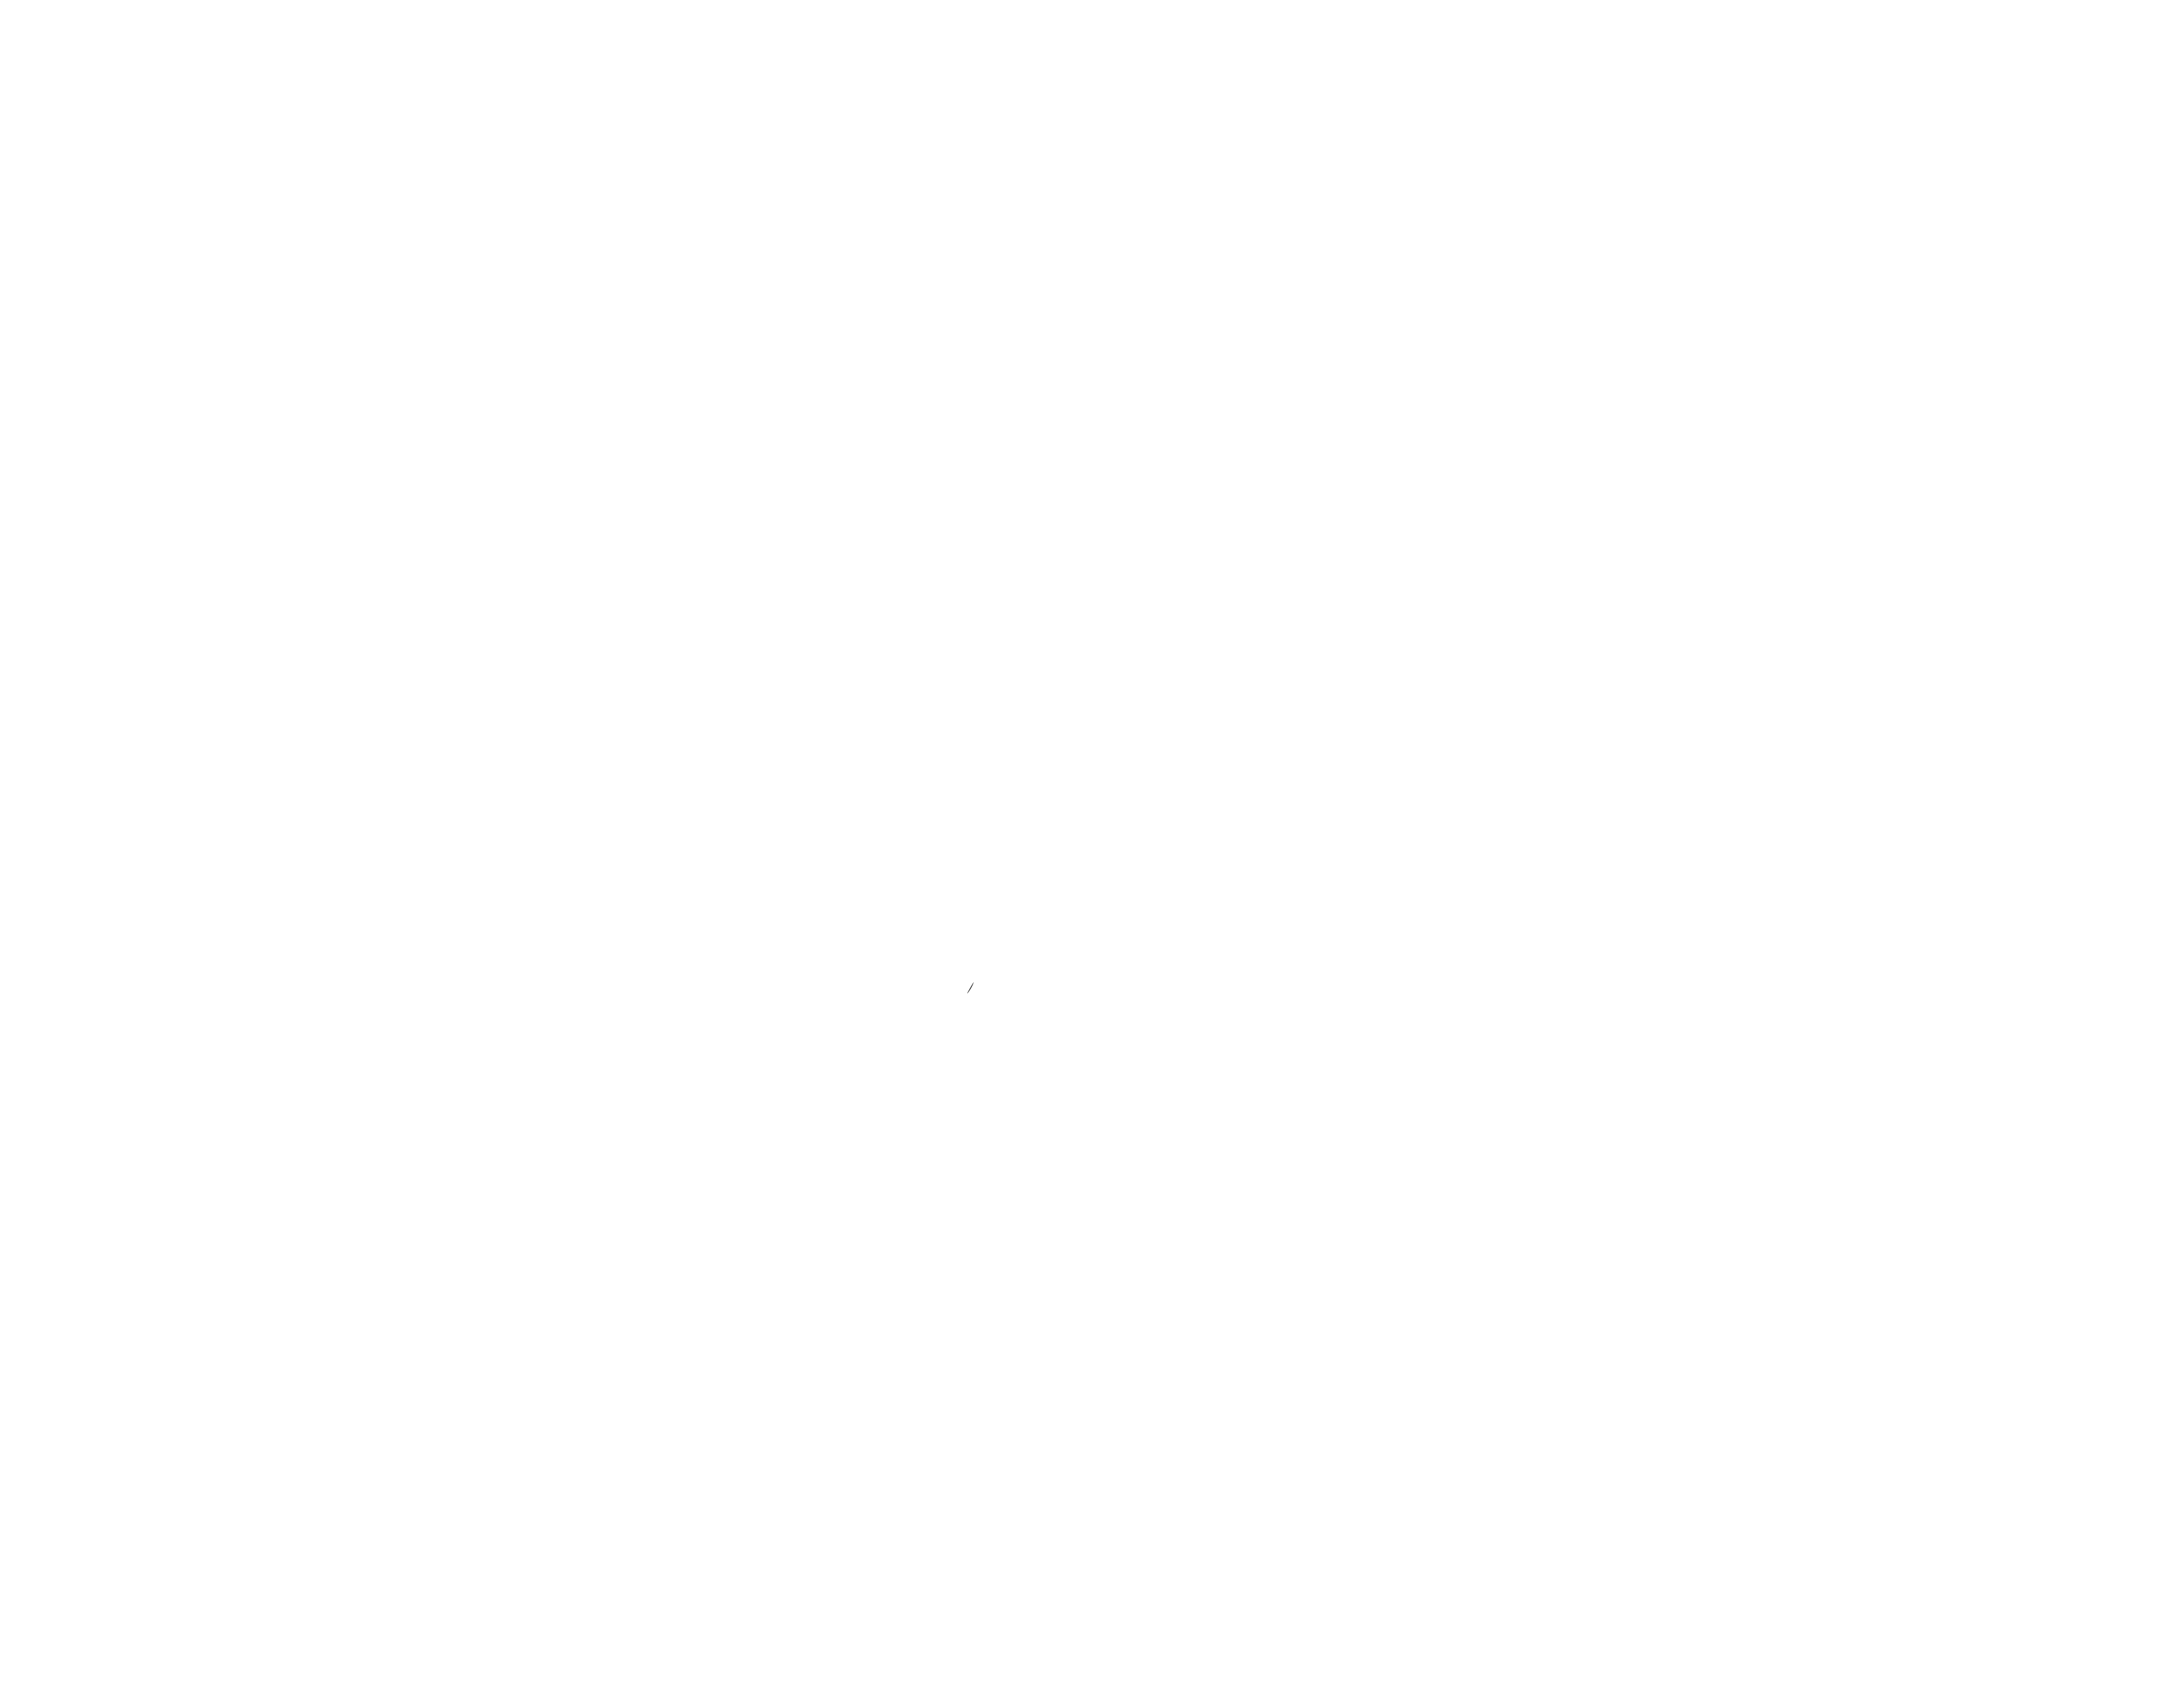 IBC Metrology